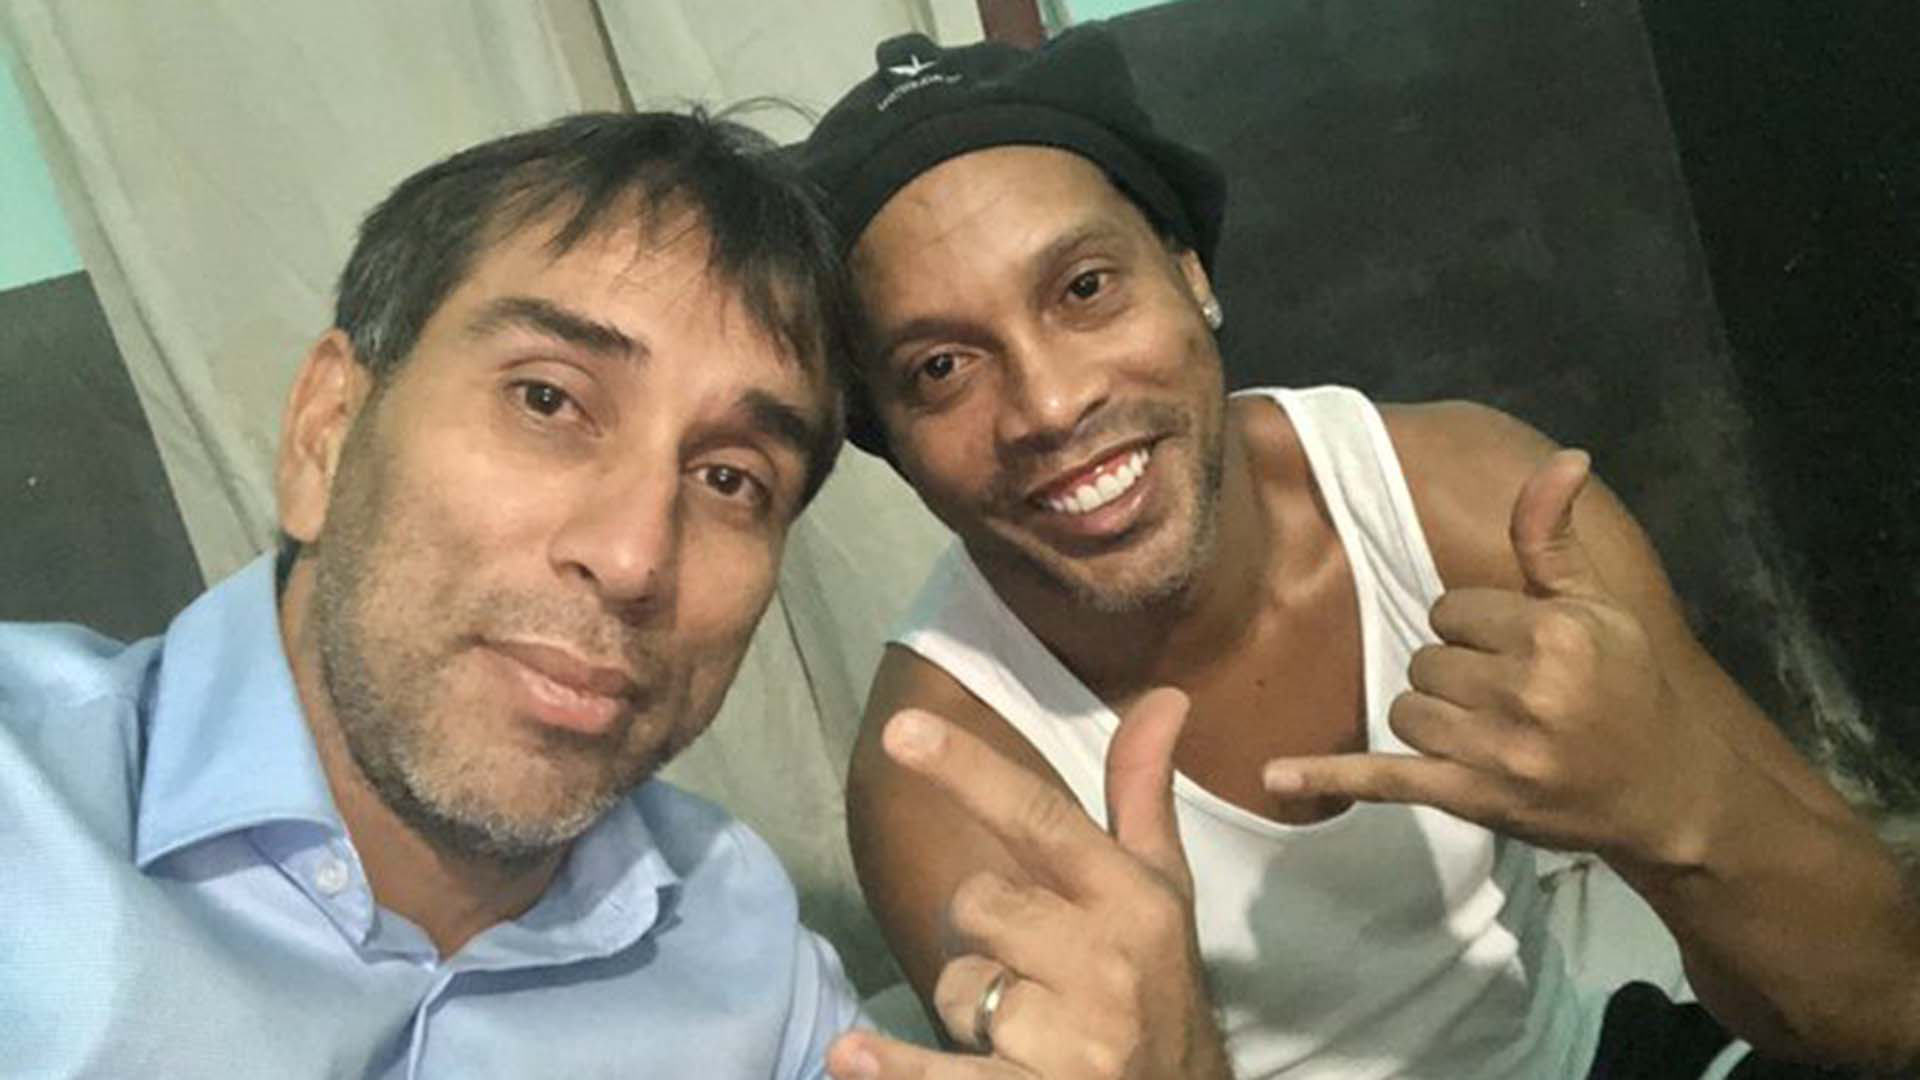 Hé lộ mới nhất về cuộc sống trong tù của Ronaldinho: Cậu ấy đang suy sụp. Nụ cười trên môi cũng không còn - Ảnh 1.